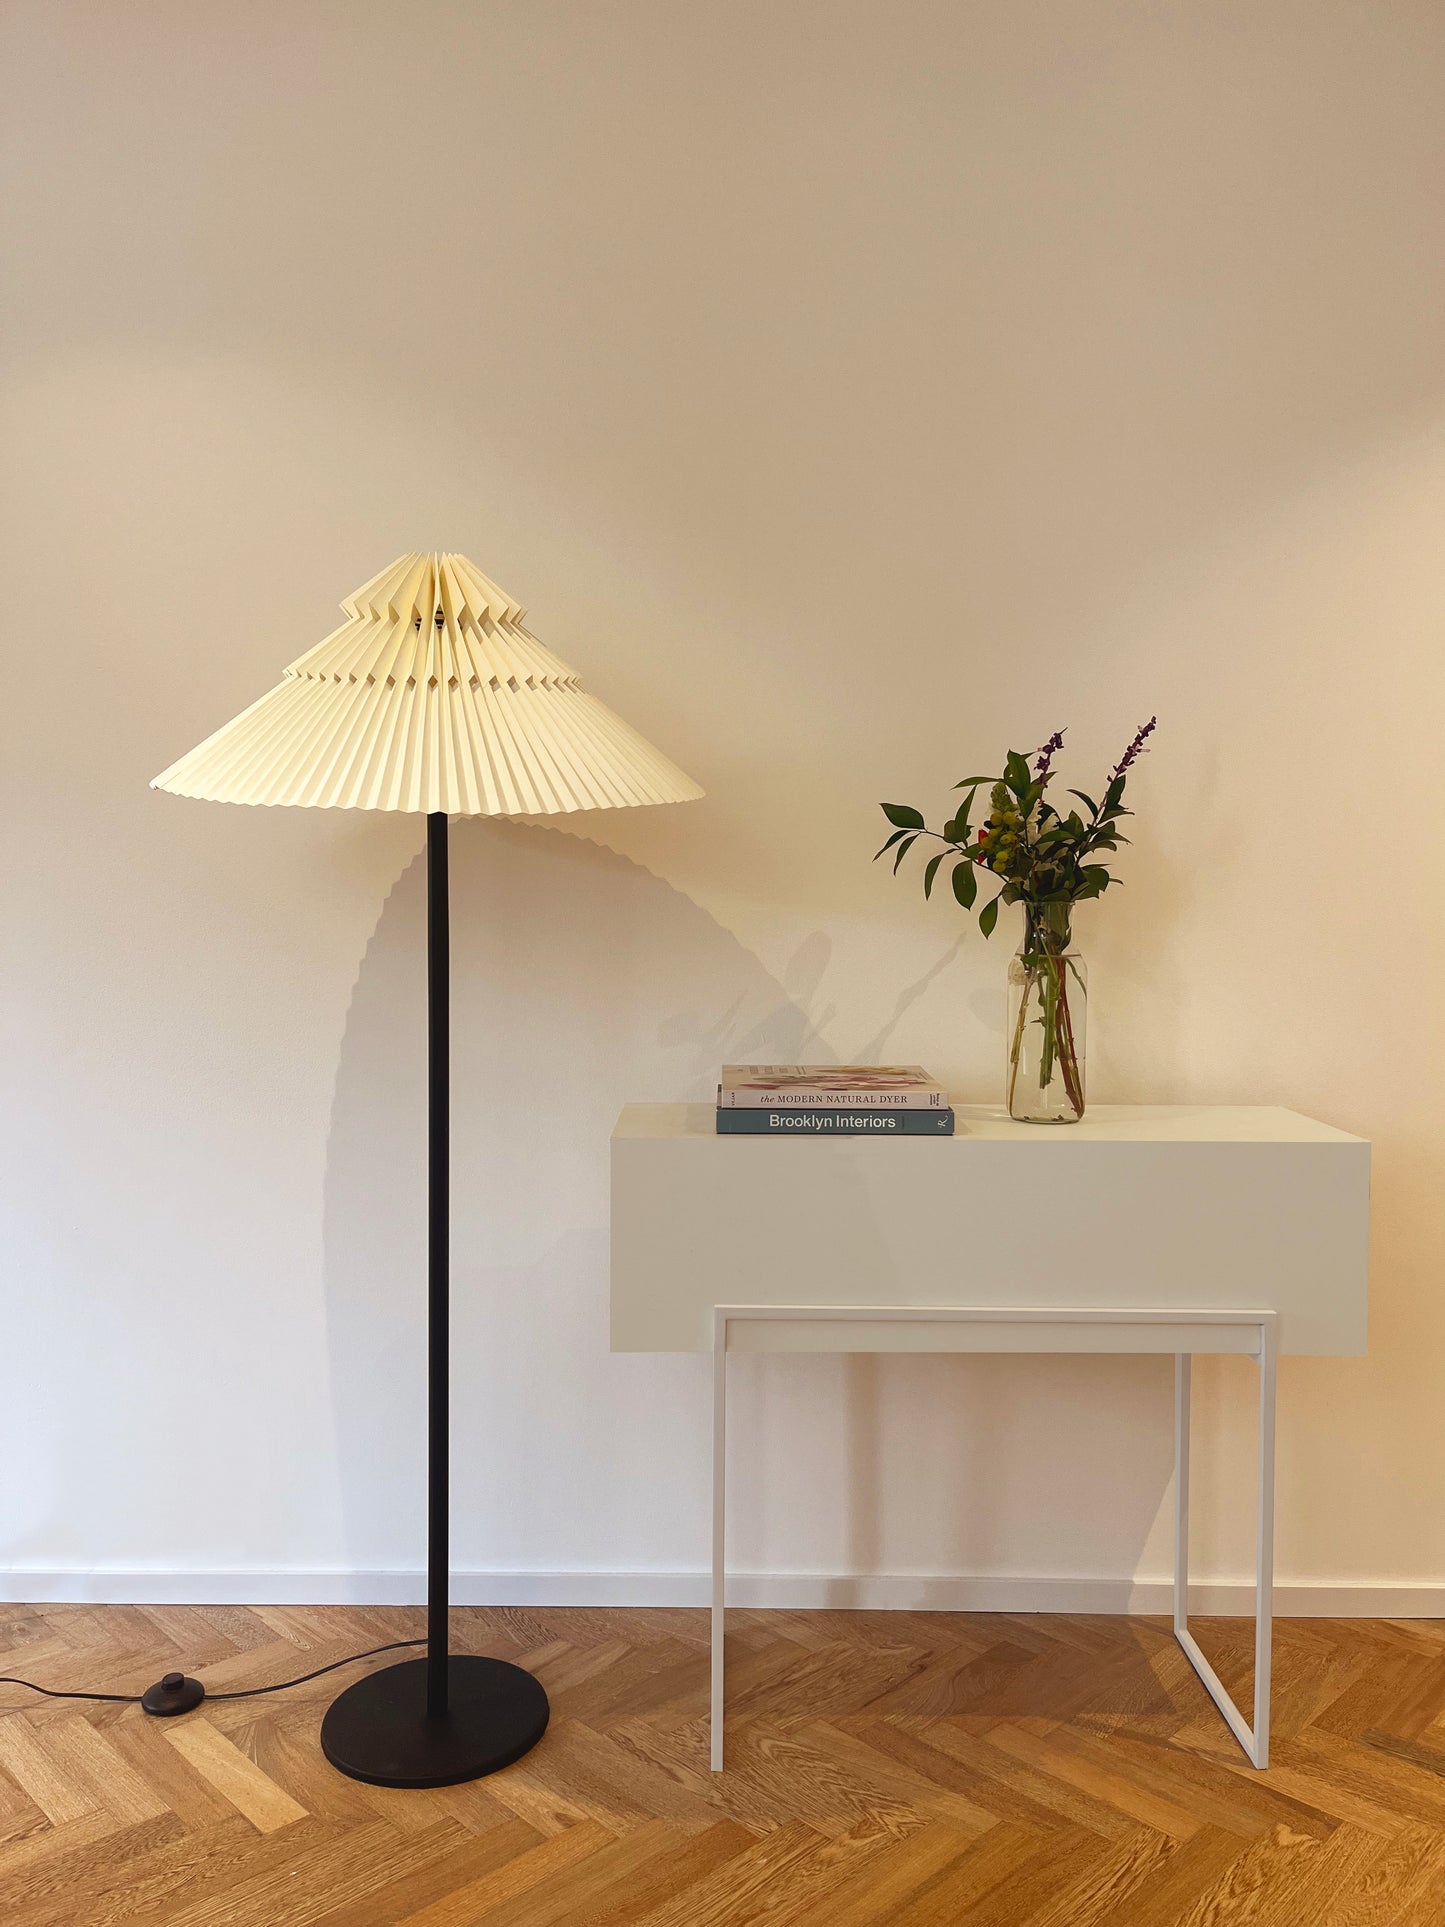 Lámpara de piso marca Plié referencia Andrómeda puesta en una espacio al lado de una mesa.  Fabricada con base metálica y caperiza hecha en papel. Diseño colombiano hecho a mano.